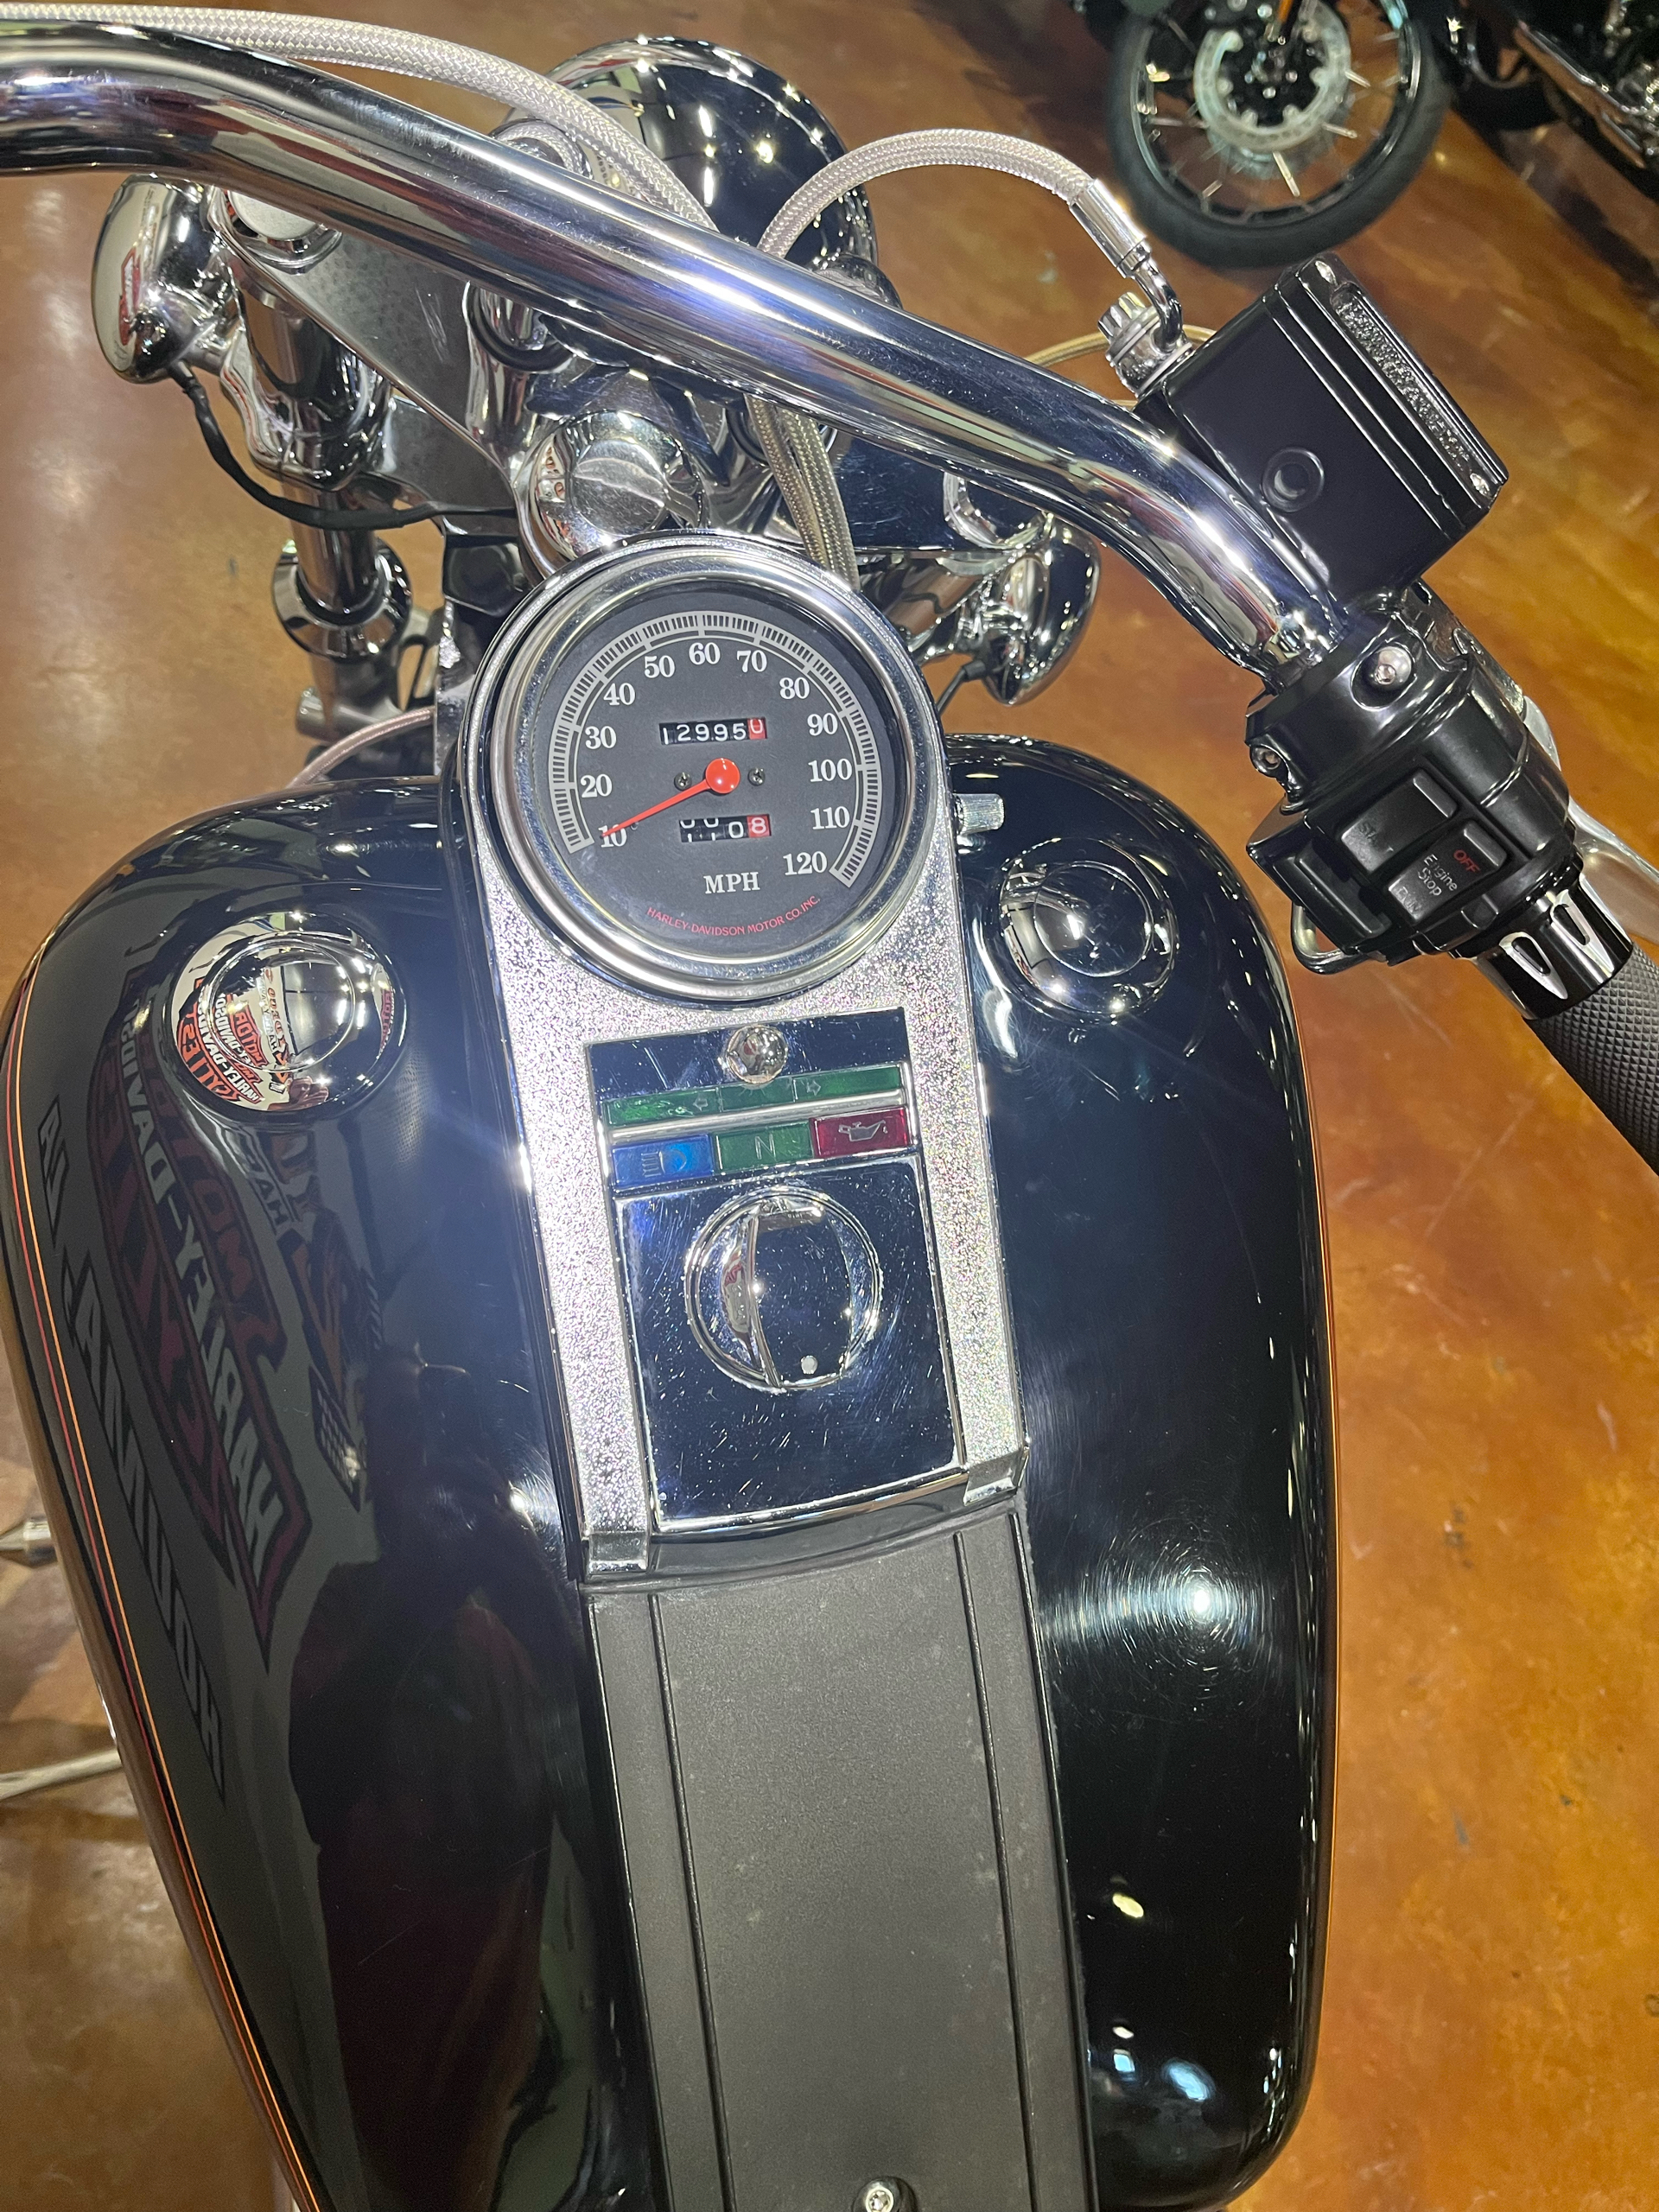 1999 Harley-Davidson FXSTC Softail Custom near me - Photo 4